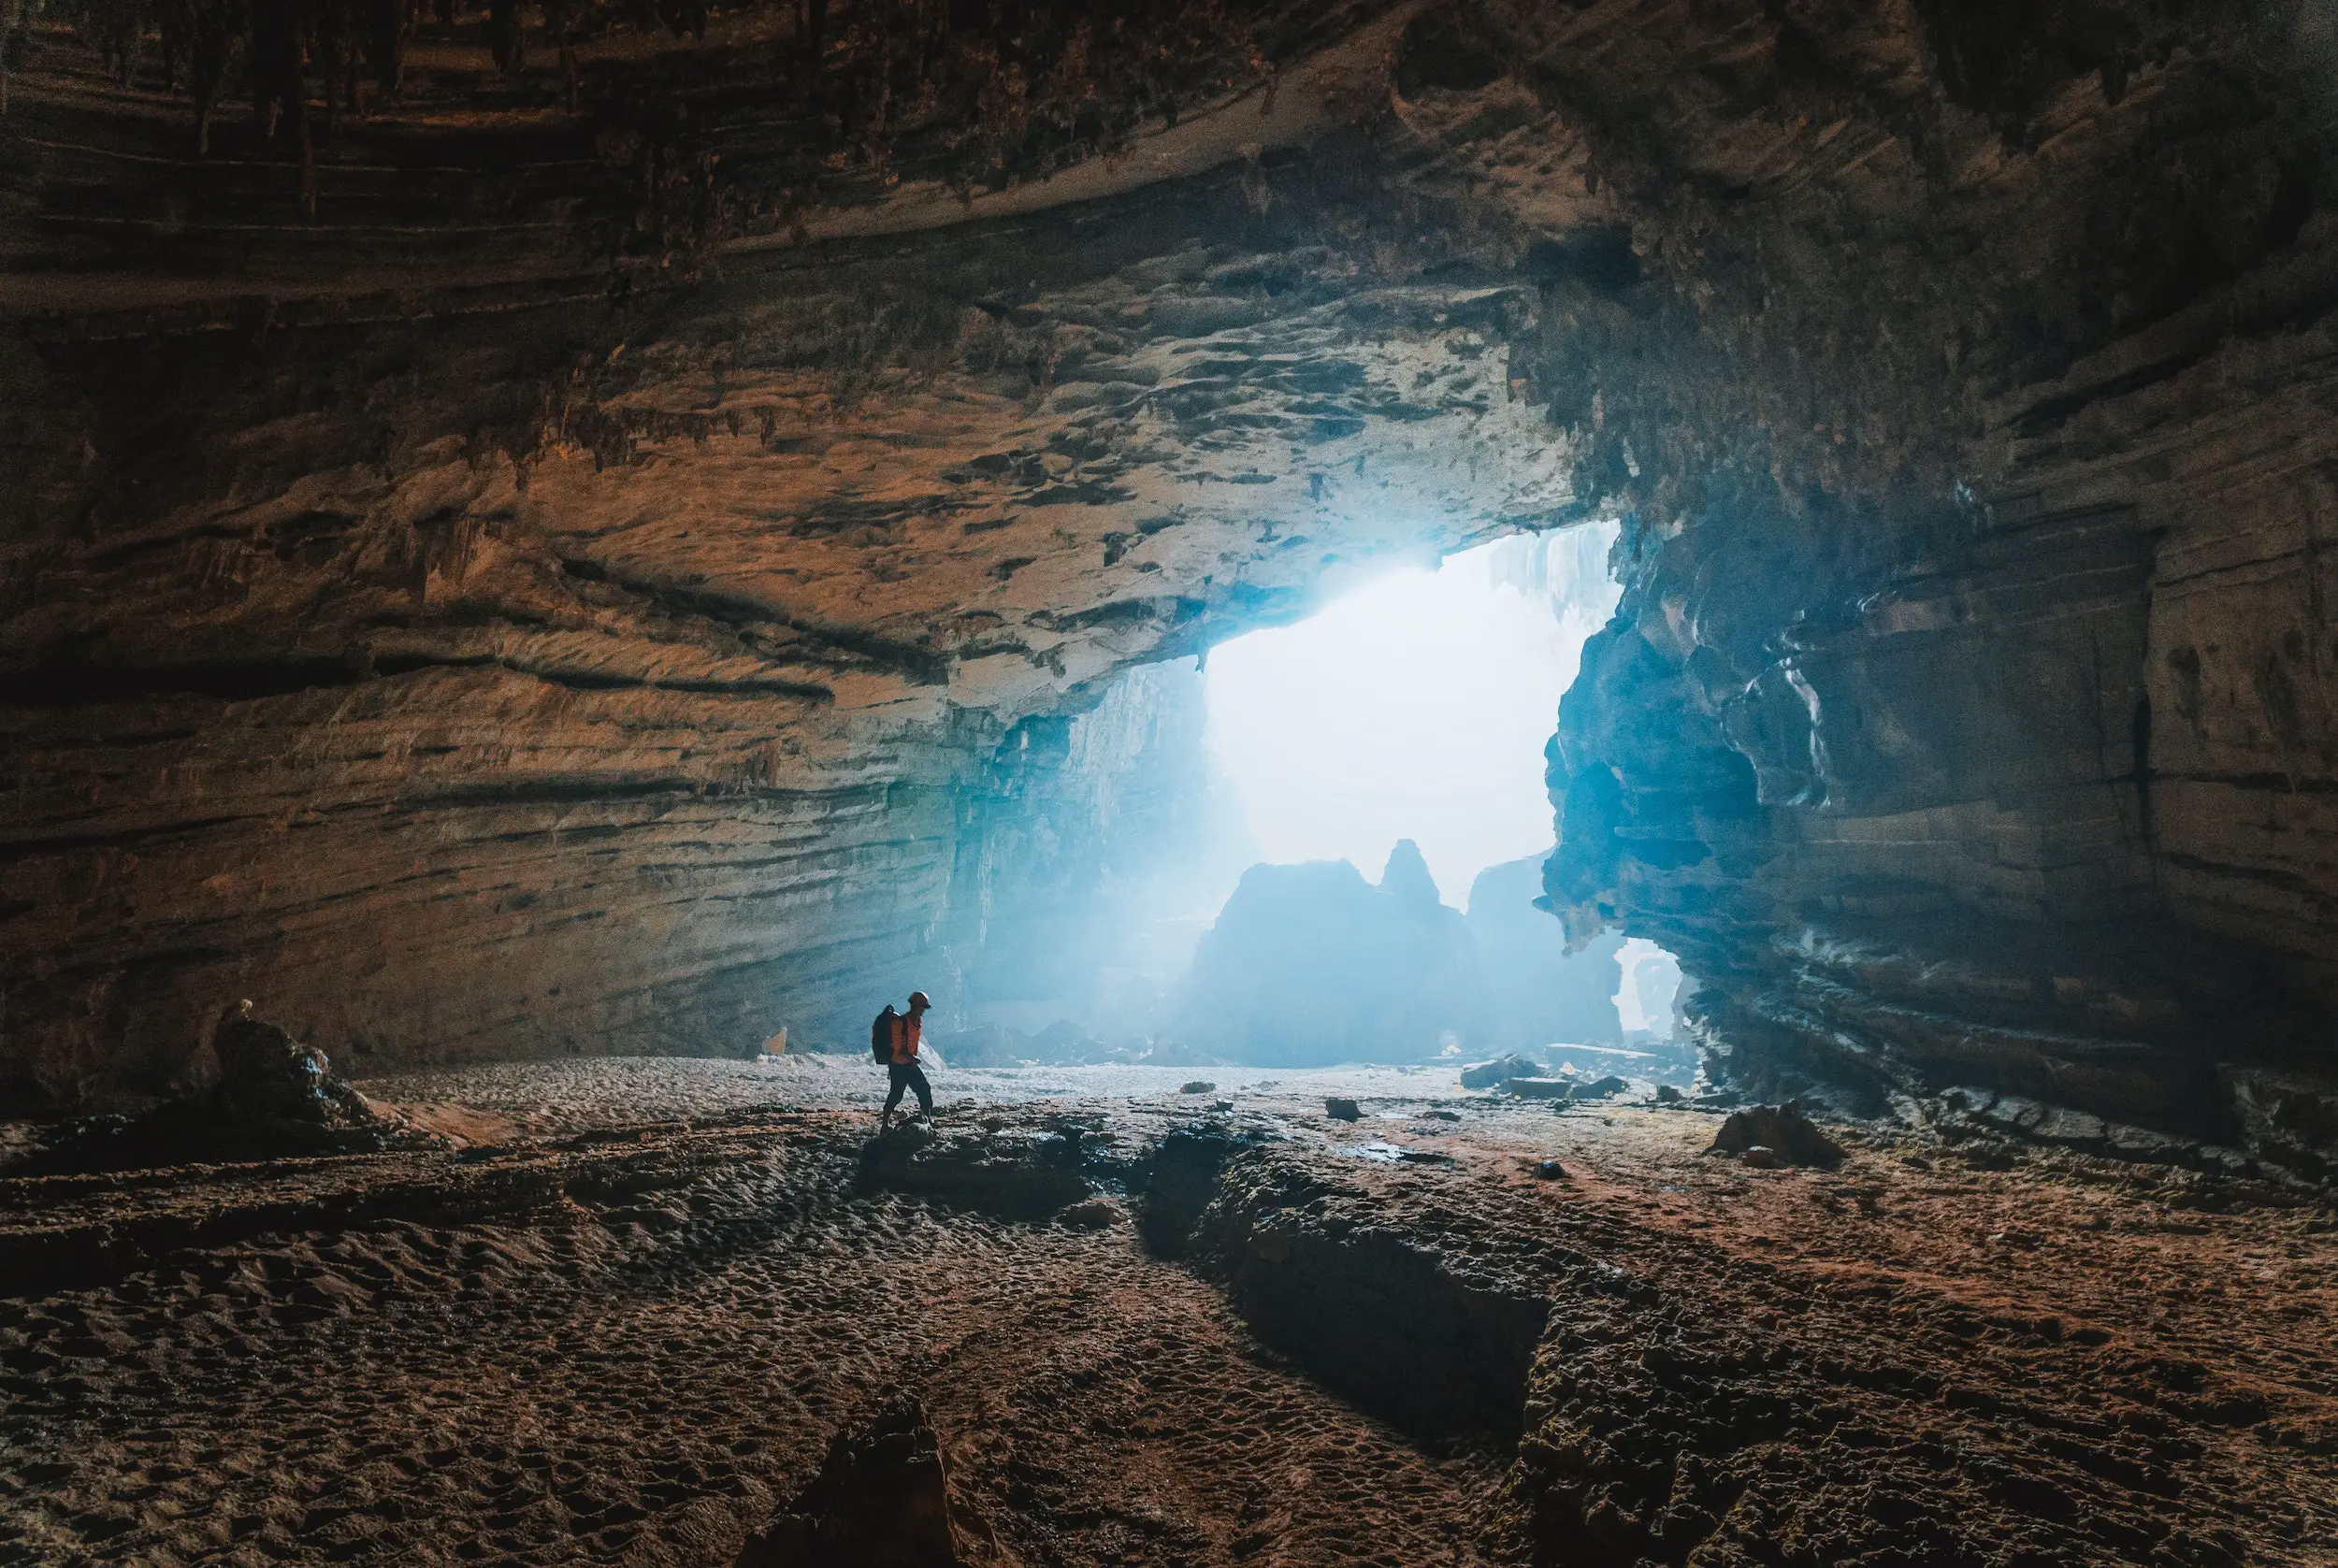 Guadikiriri Caves